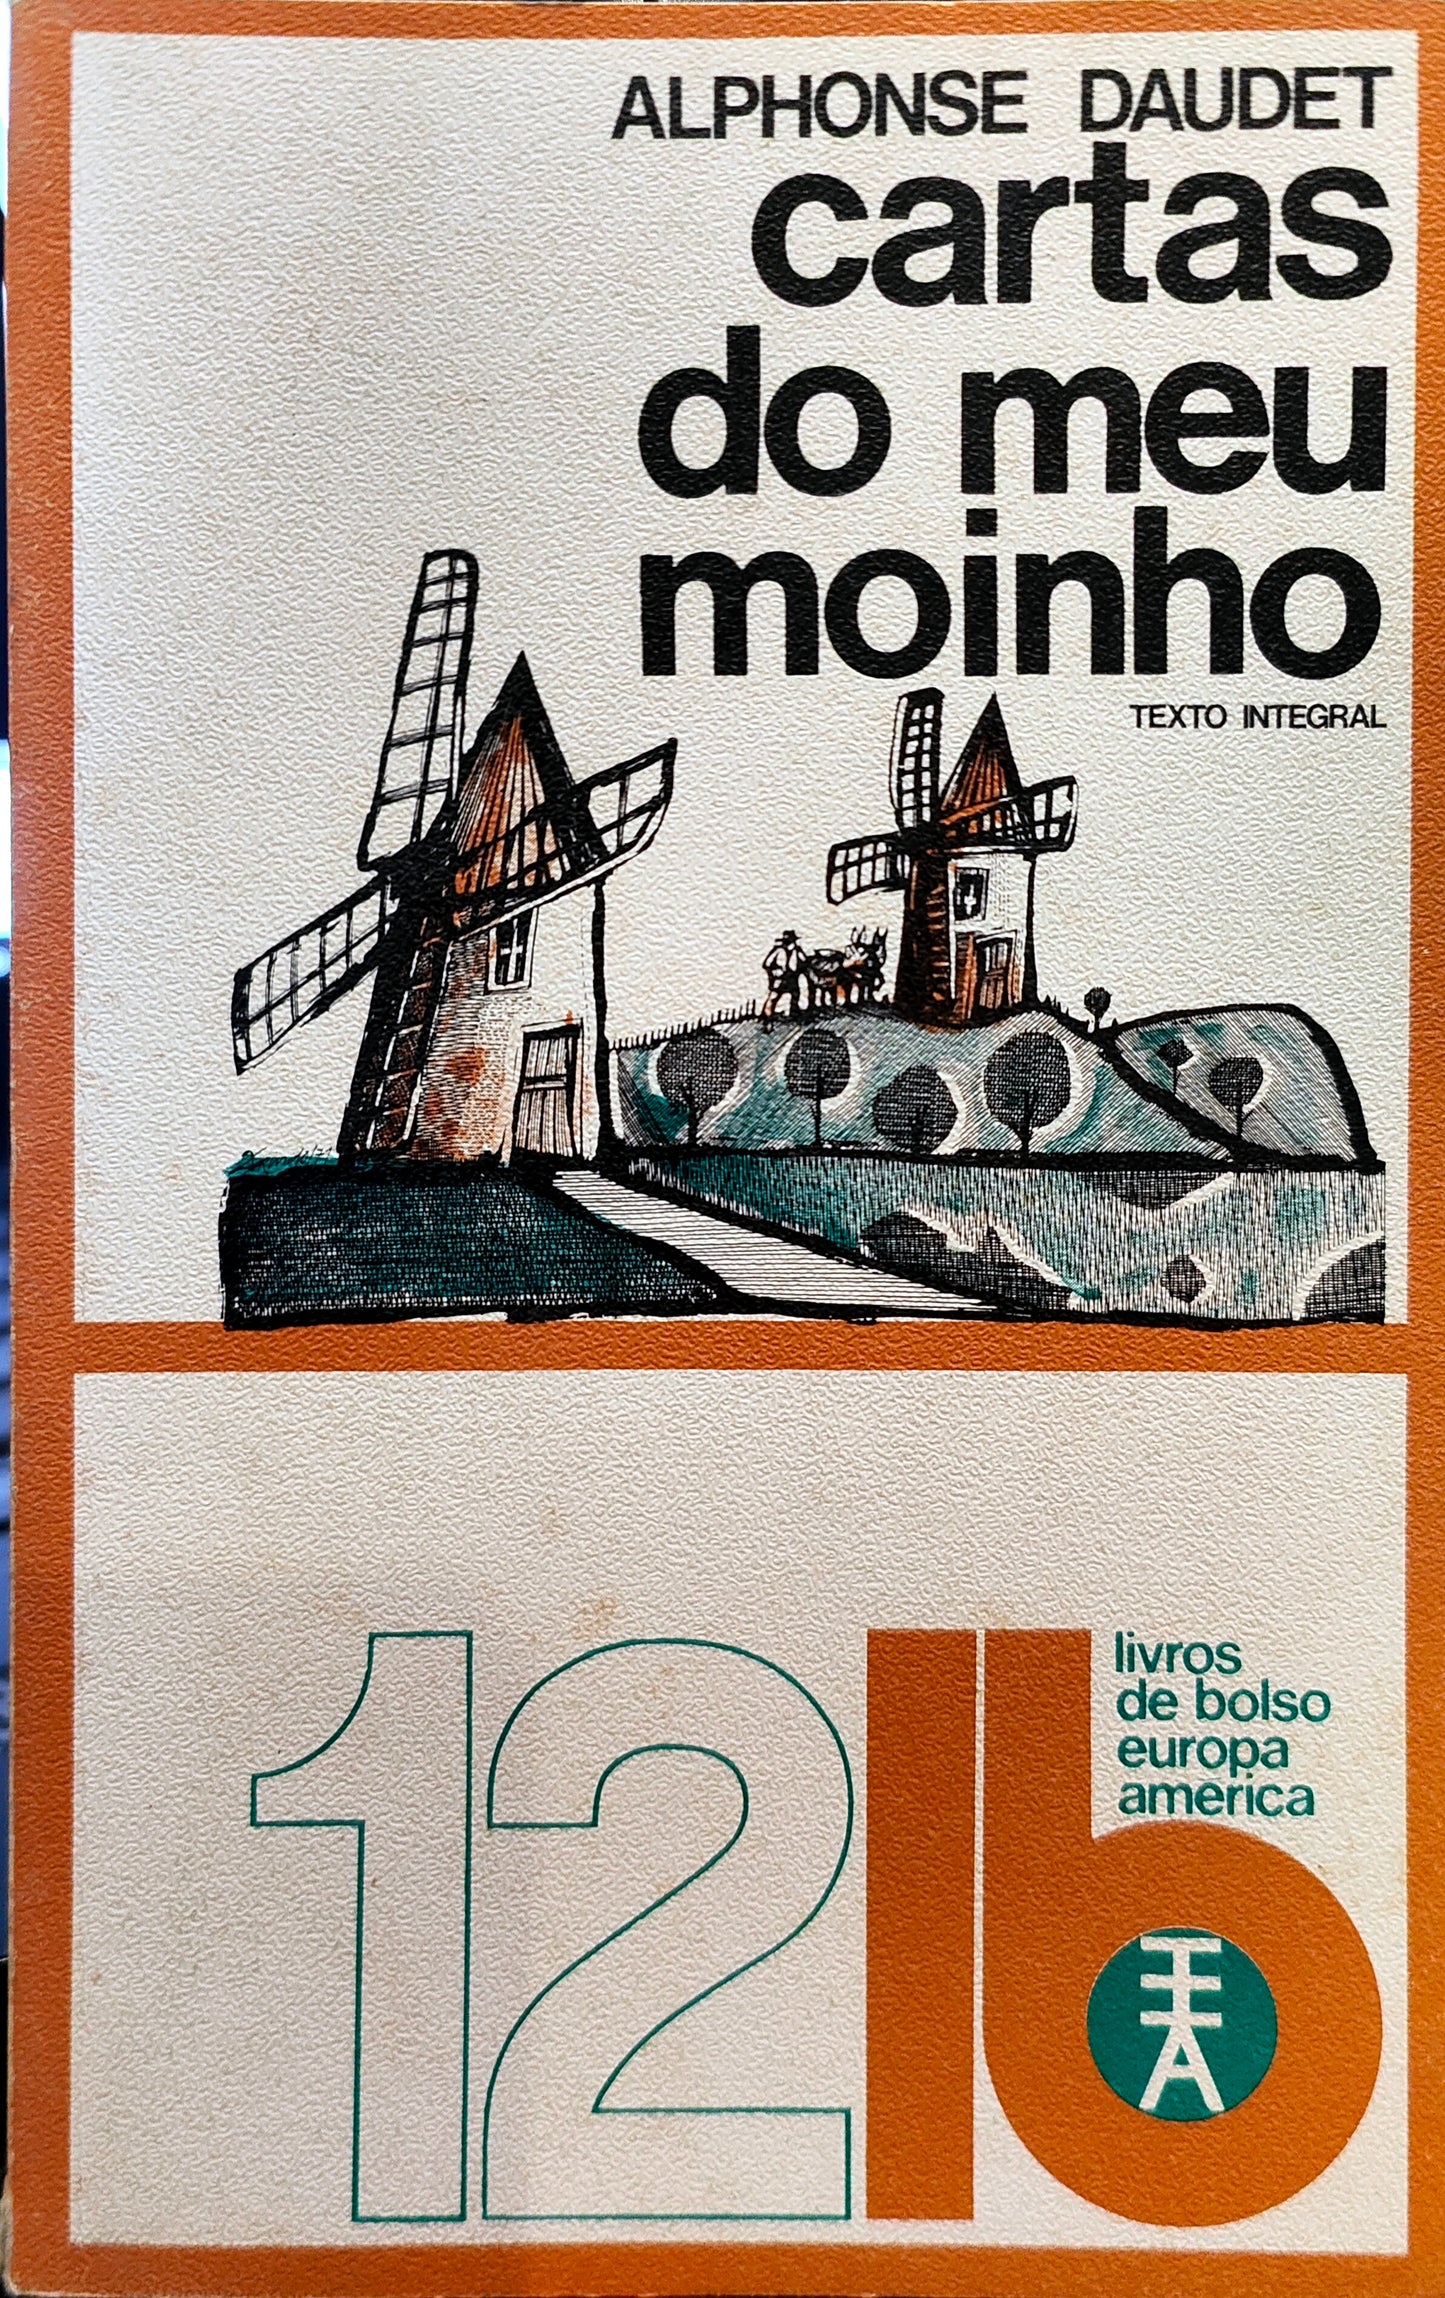 LIVRO LB12 - Cartas do Meu Moinho Livro 1 de Alphonse Daudet (1971) - USADO